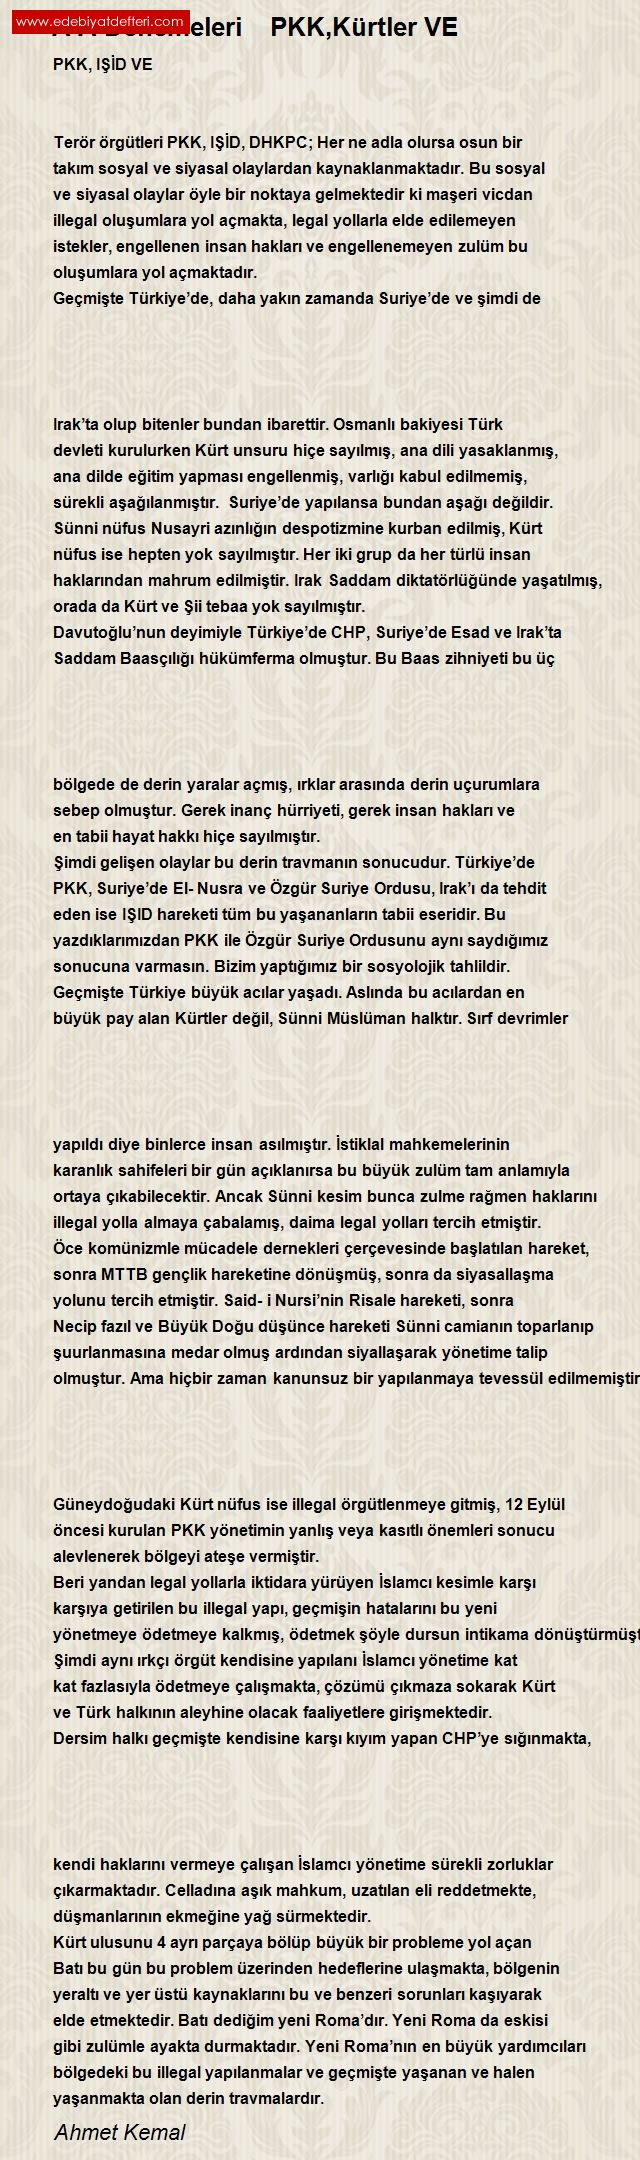 PKK DEA VE